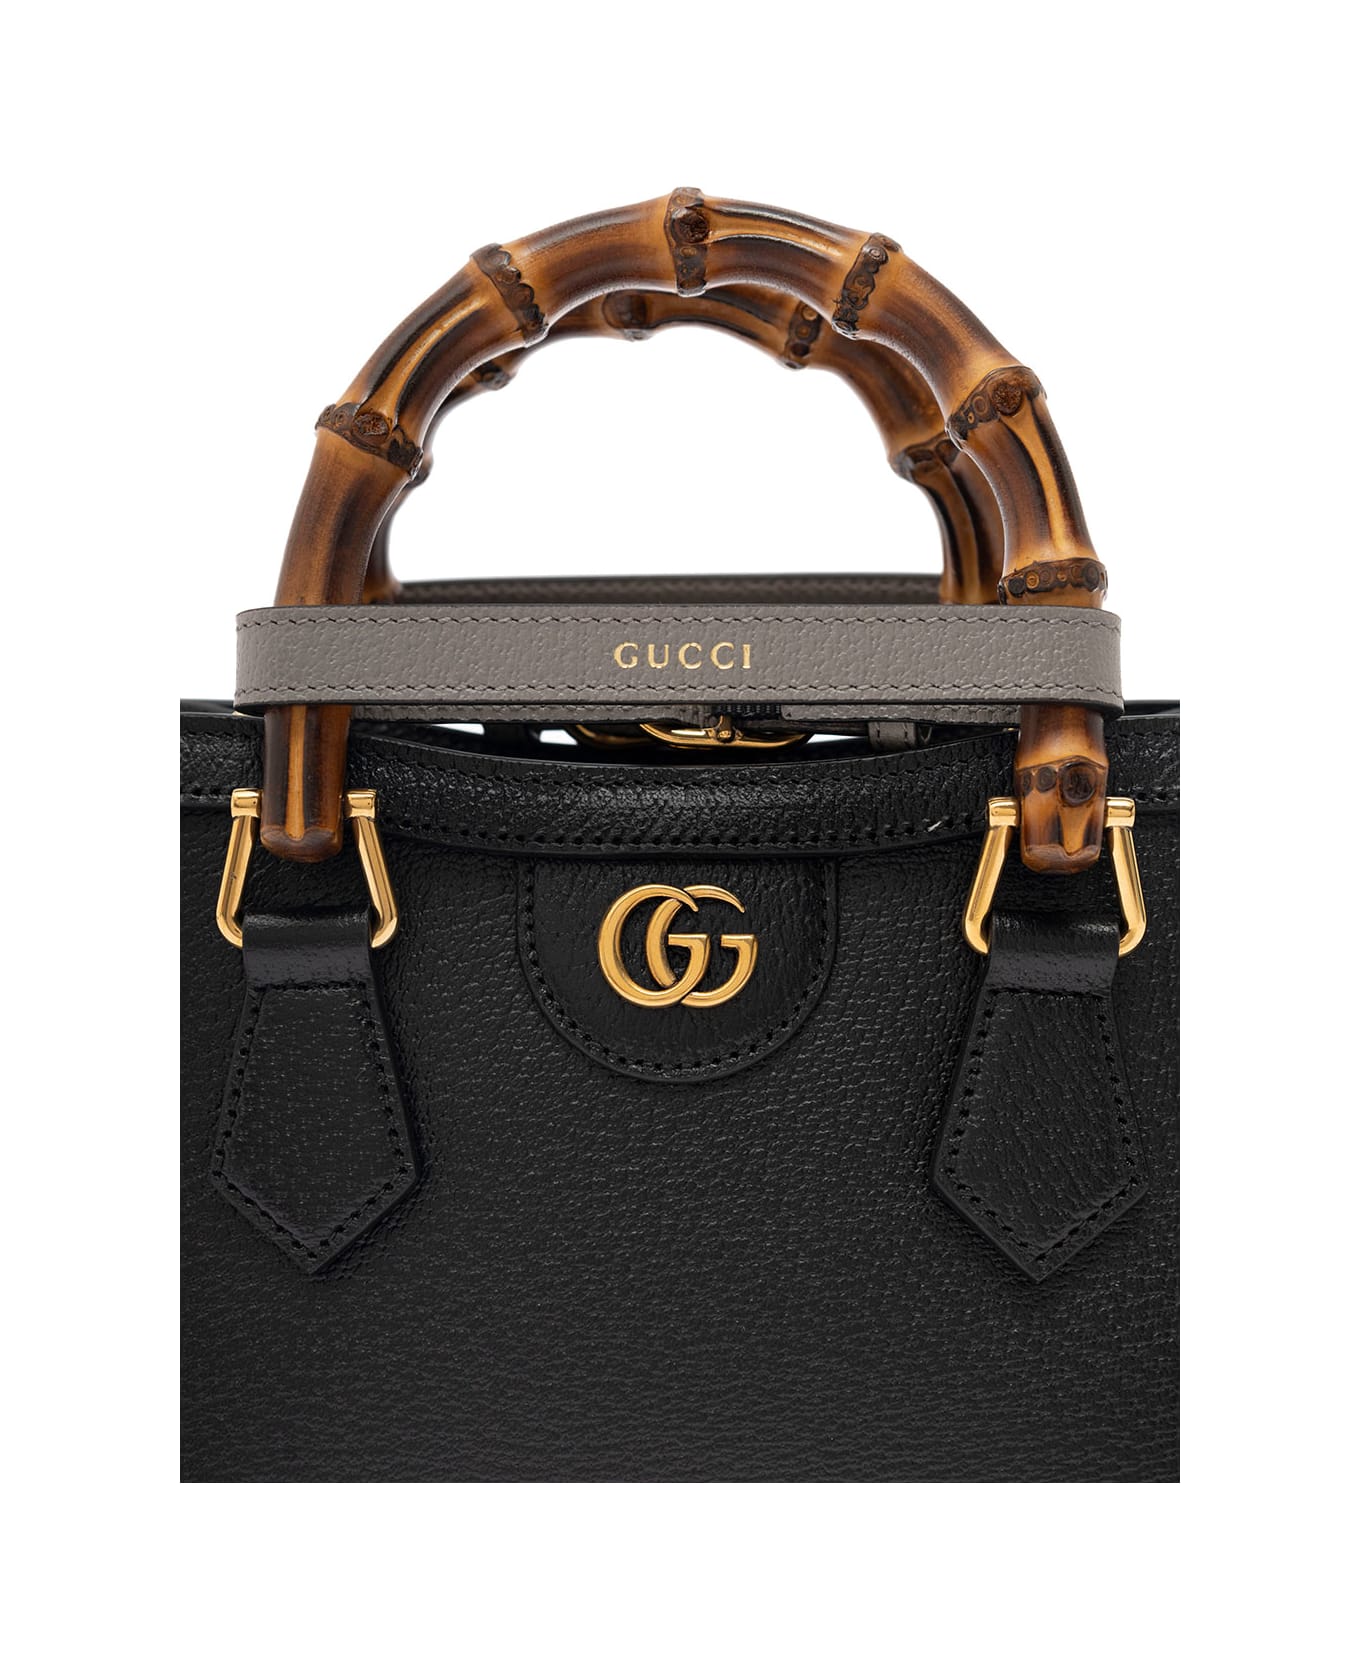 Gucci Handbag Diana Doll.pig/d - Black